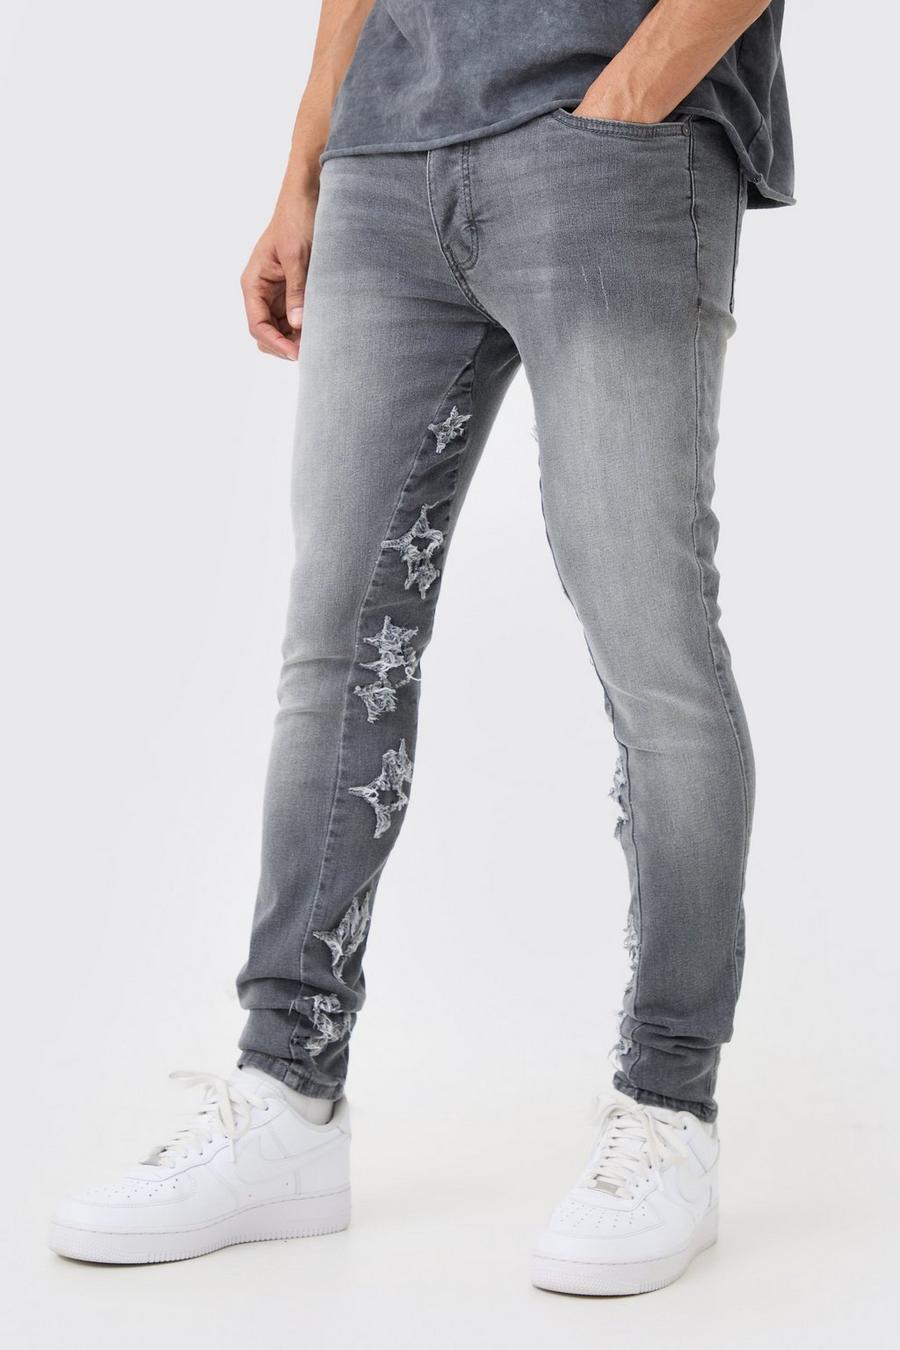 Graue Skinny Stretch Jeans mit Applikation, Grey